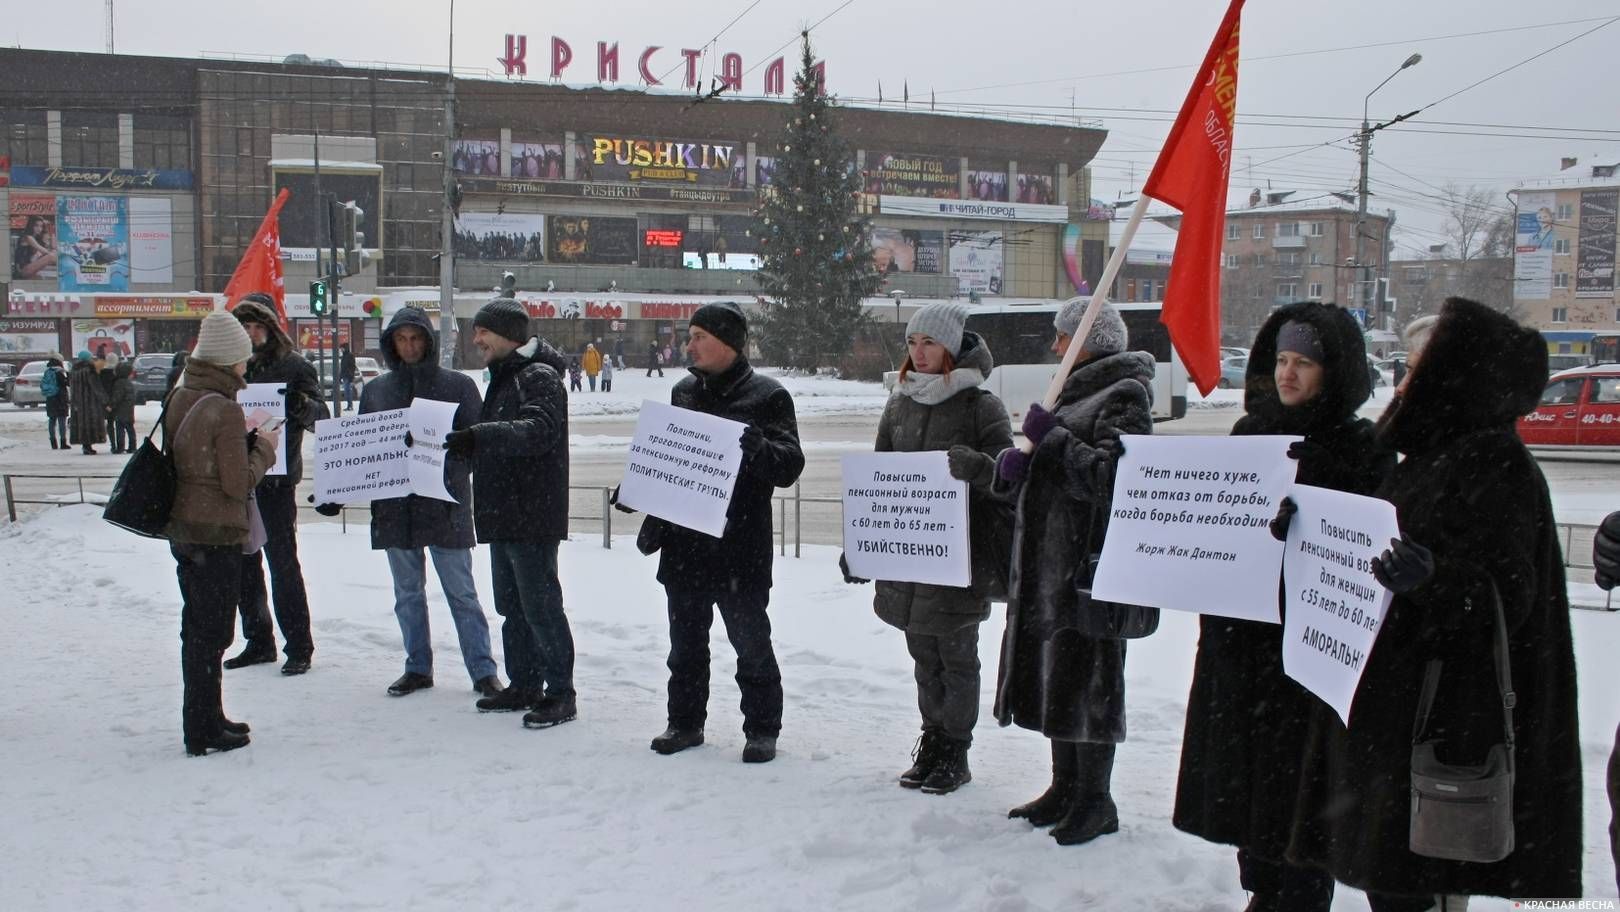 Пикет против пенсионной реформы. Омск. 01.12.2018